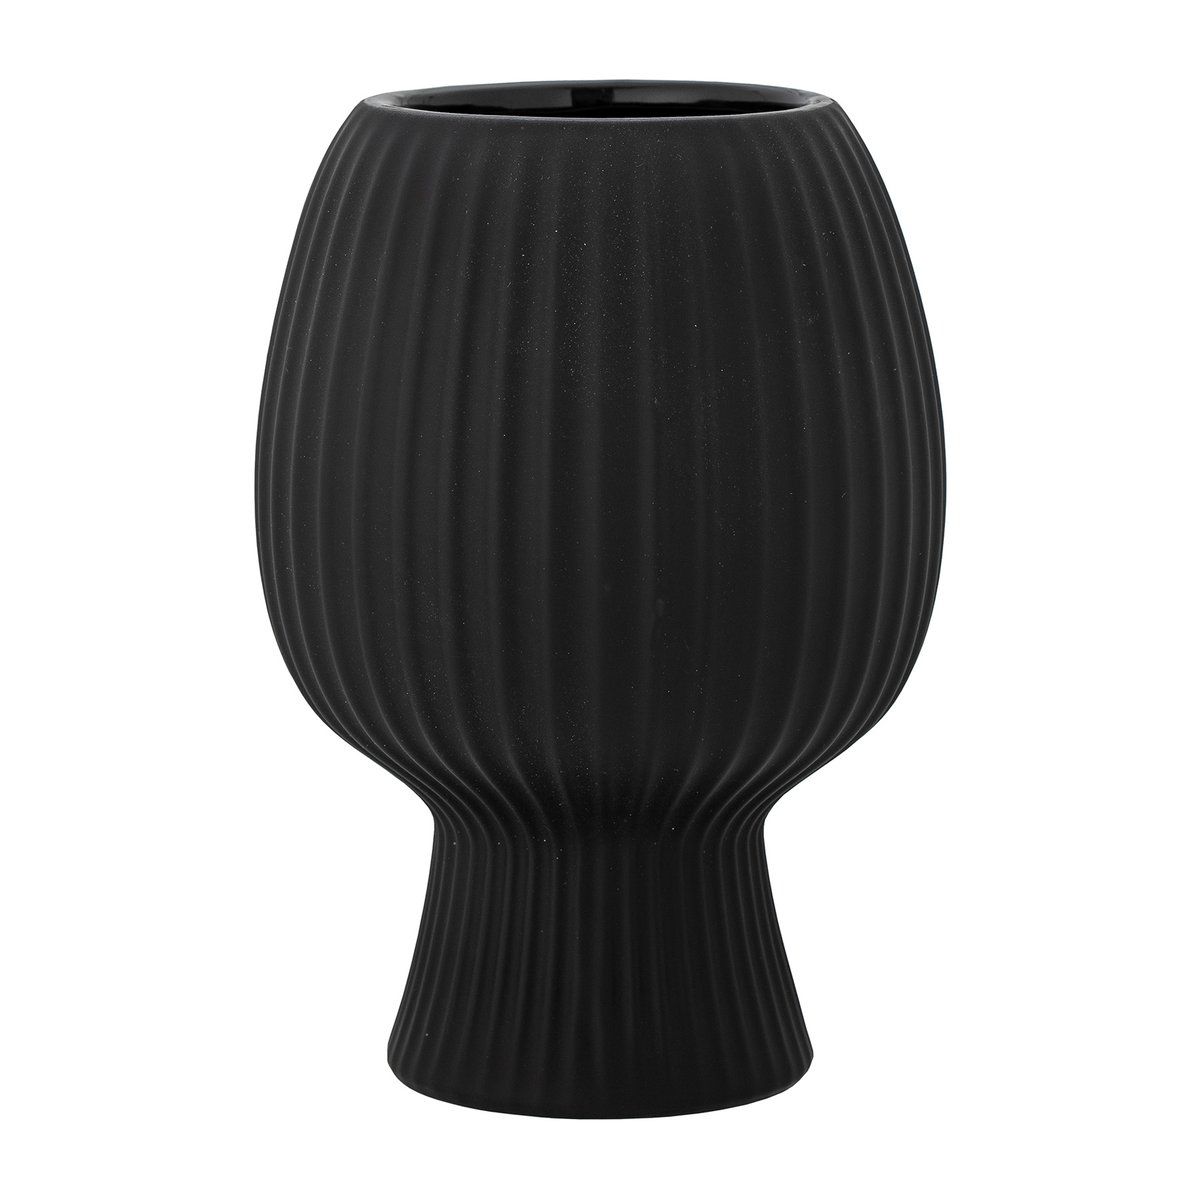 Bilde av Bloomingville Dagny vase 215 cm Svart